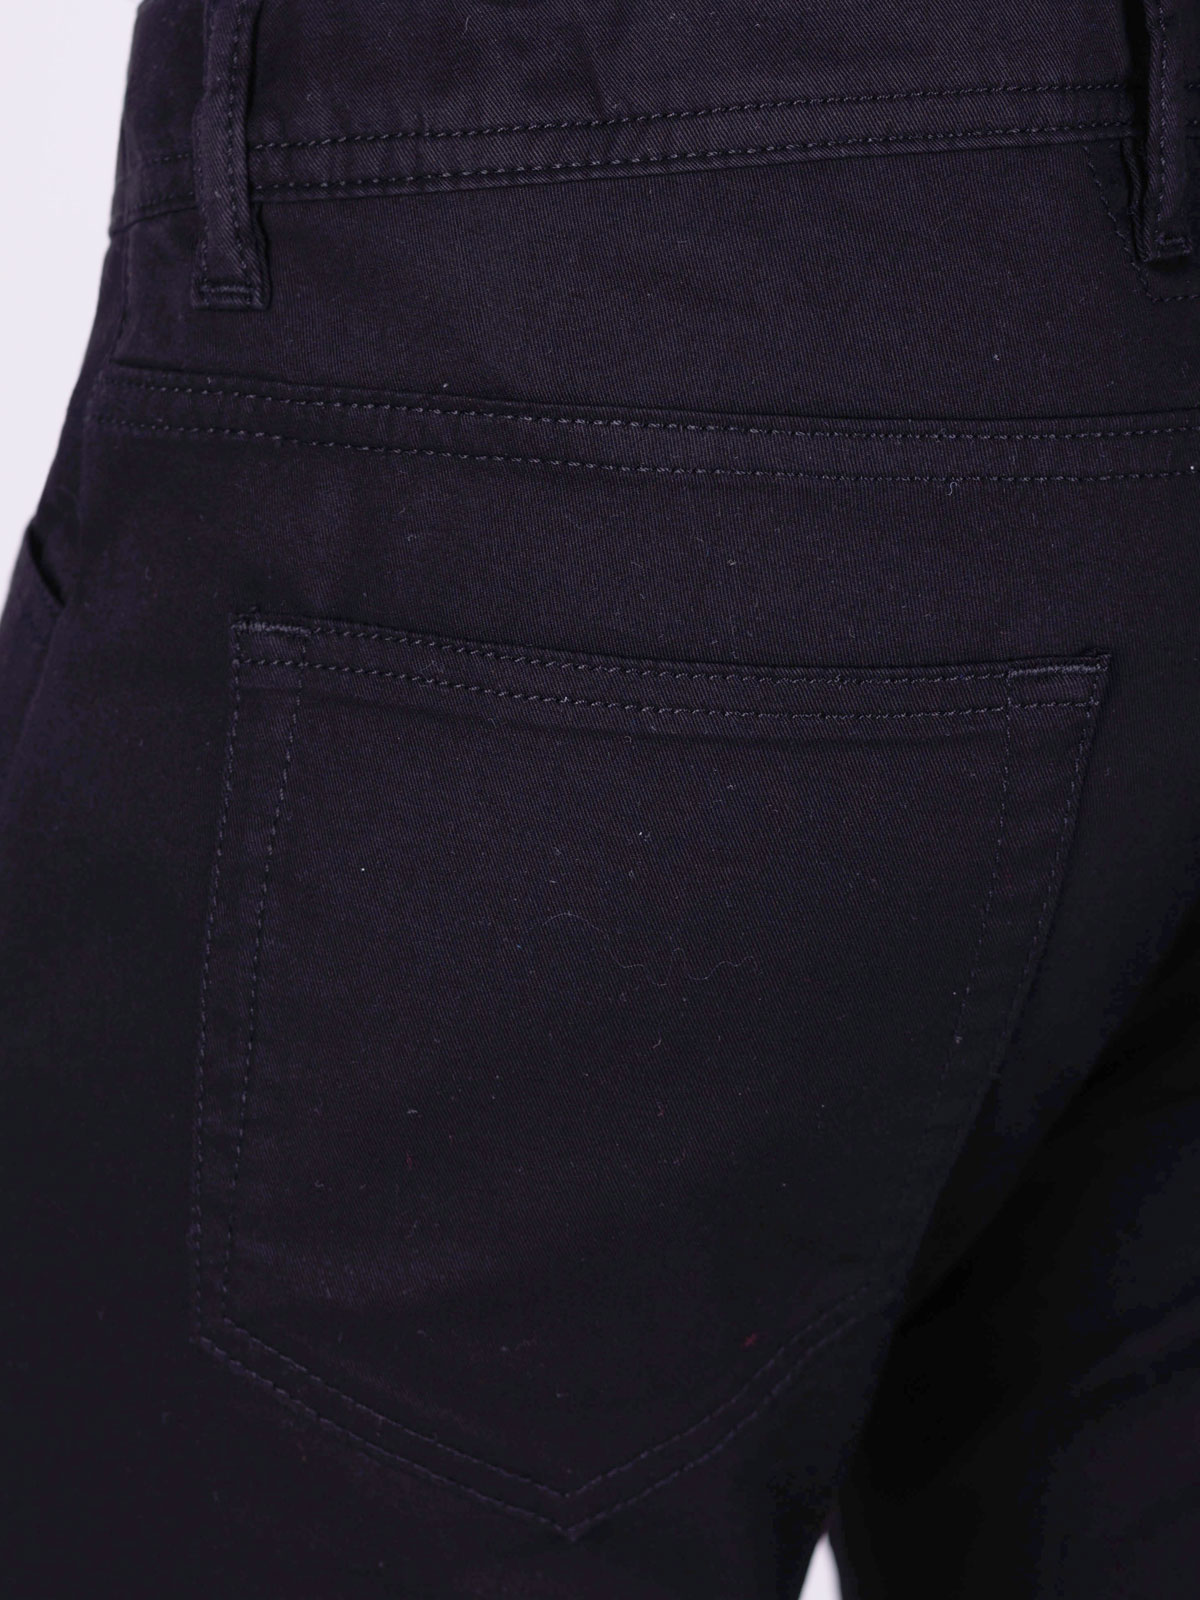 Pantaloni negri cu cinci buzunare - 60300 € 66.37 img4